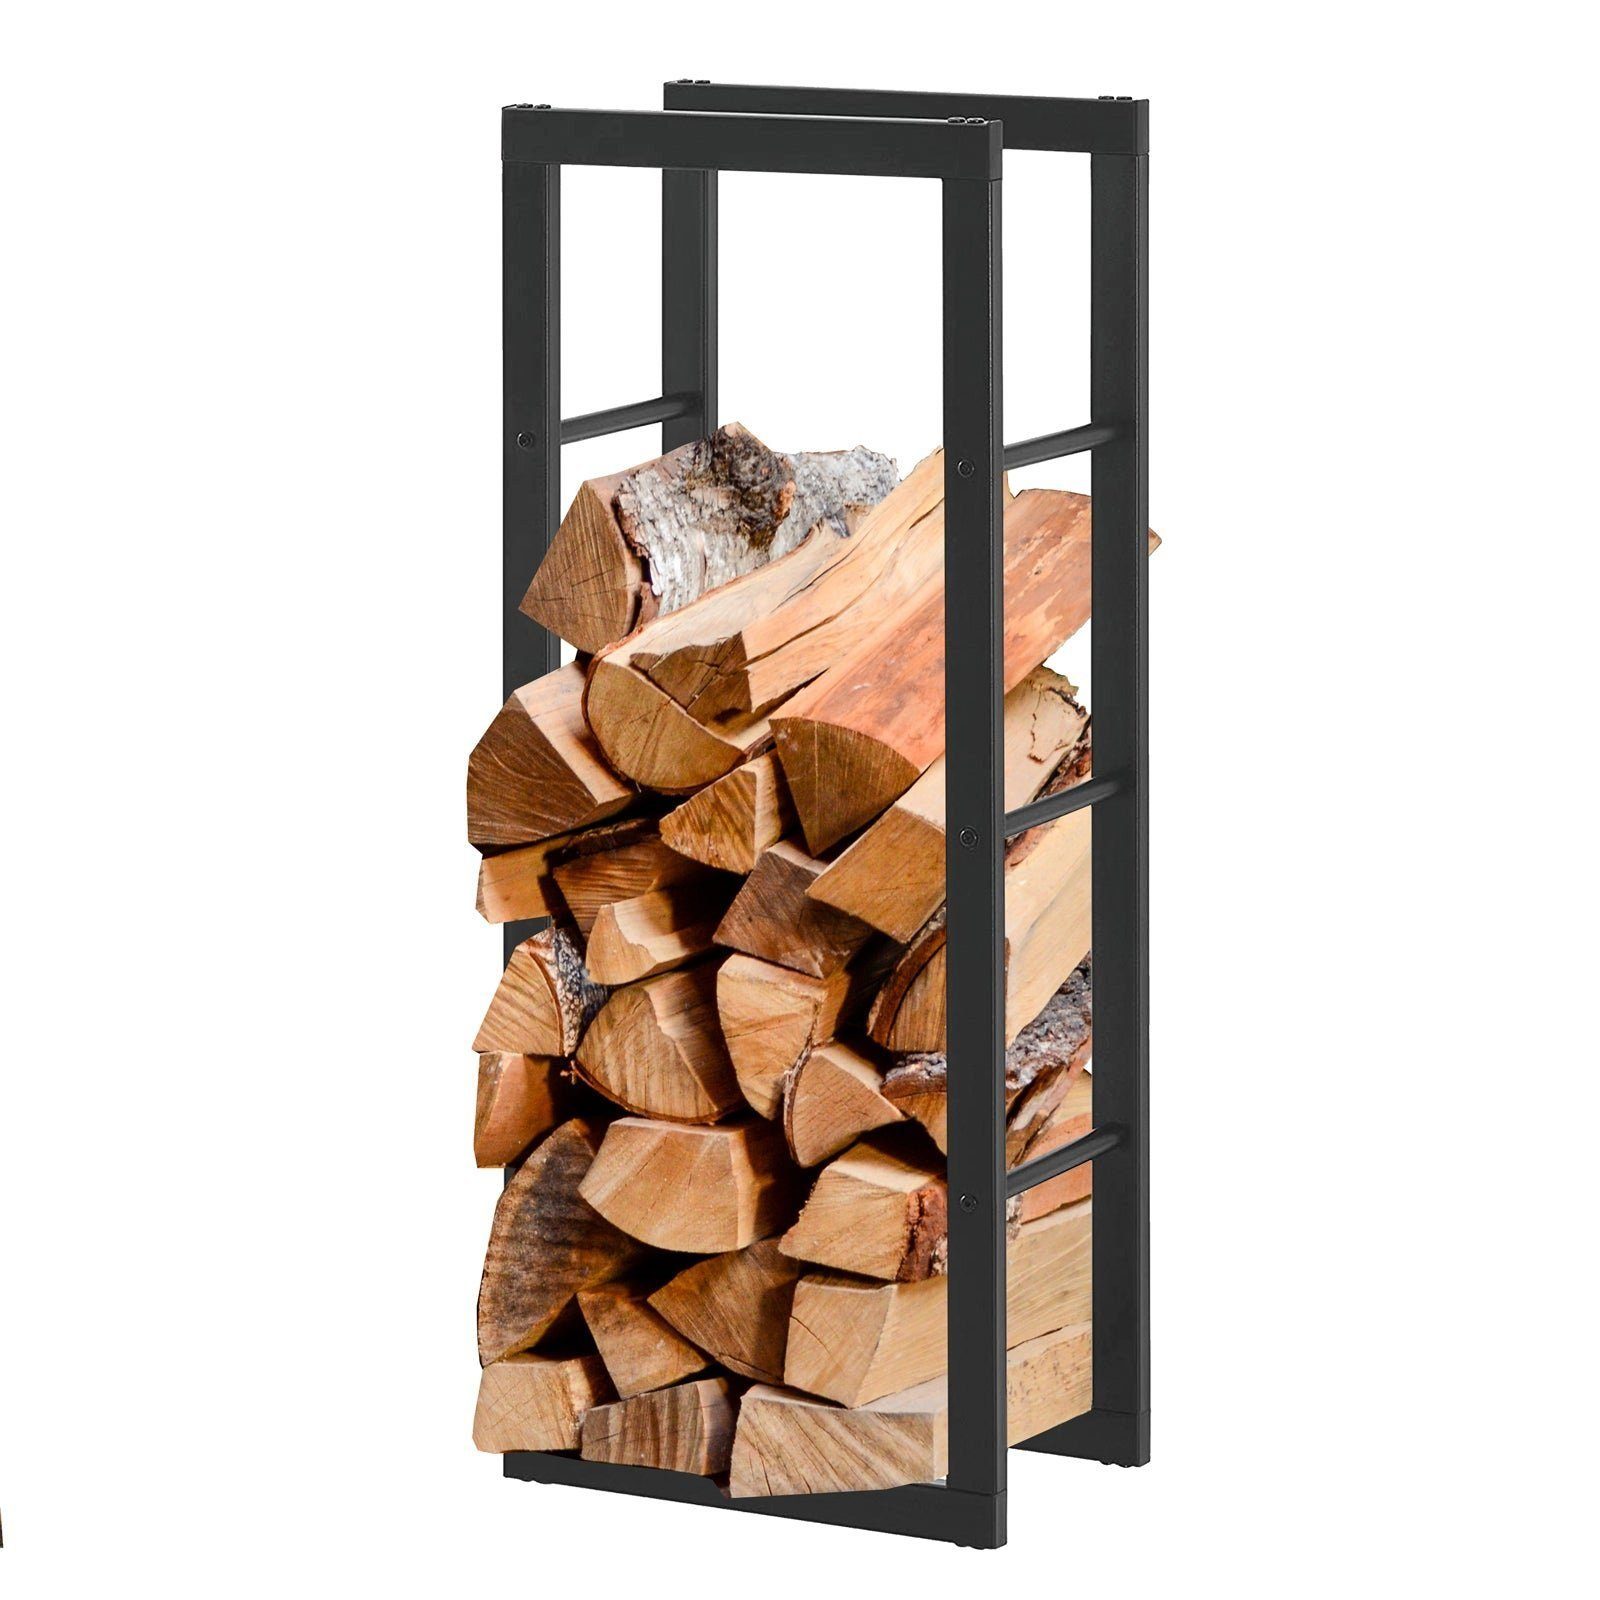 Karat Kaminholzregal Erhältlich in 3 Größen, Holzregal, Holzvorrat, BxTxH:30x45x170 cm, Für den Innen- und Außenbereich geeignet